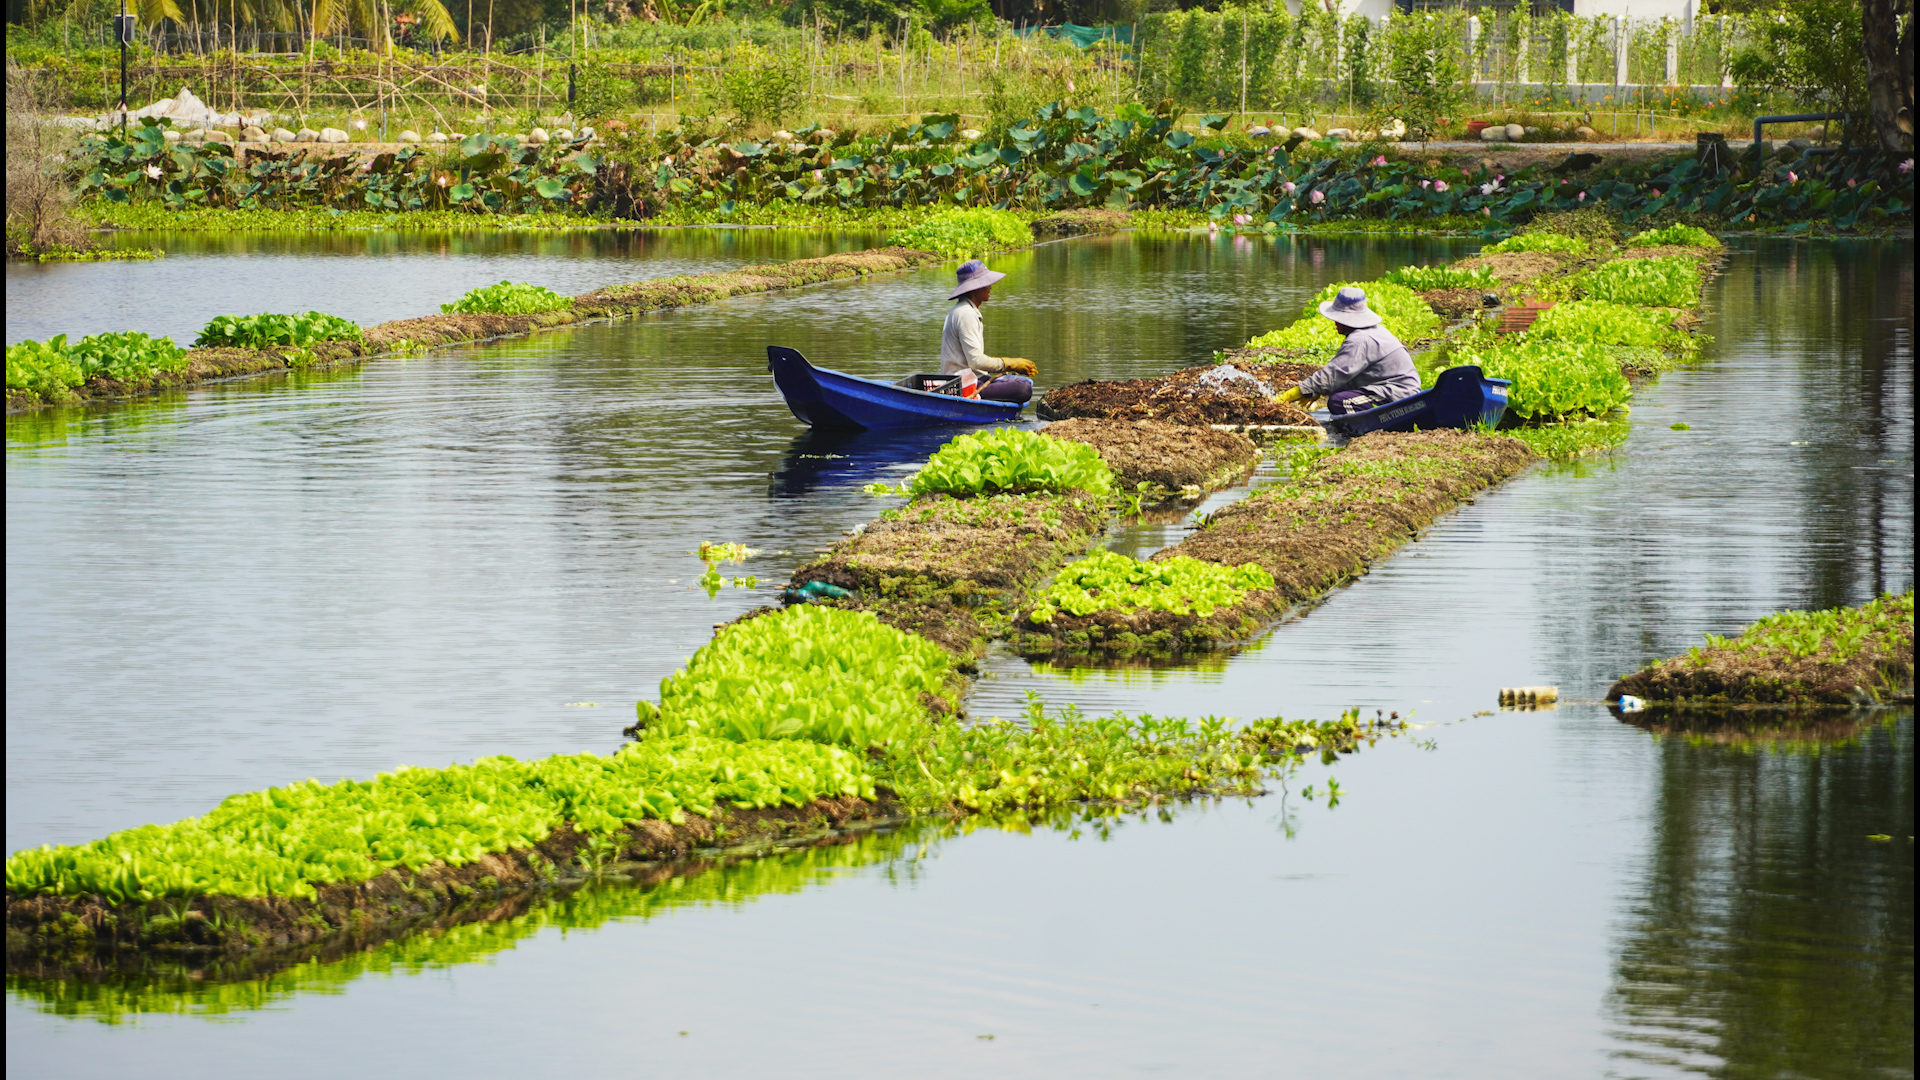 Chuyện lạ Long An, trồng rau tốt um trên bèo lục bình nổi trên sông, Tây Ninh đang muốn làm theo - Ảnh 1.